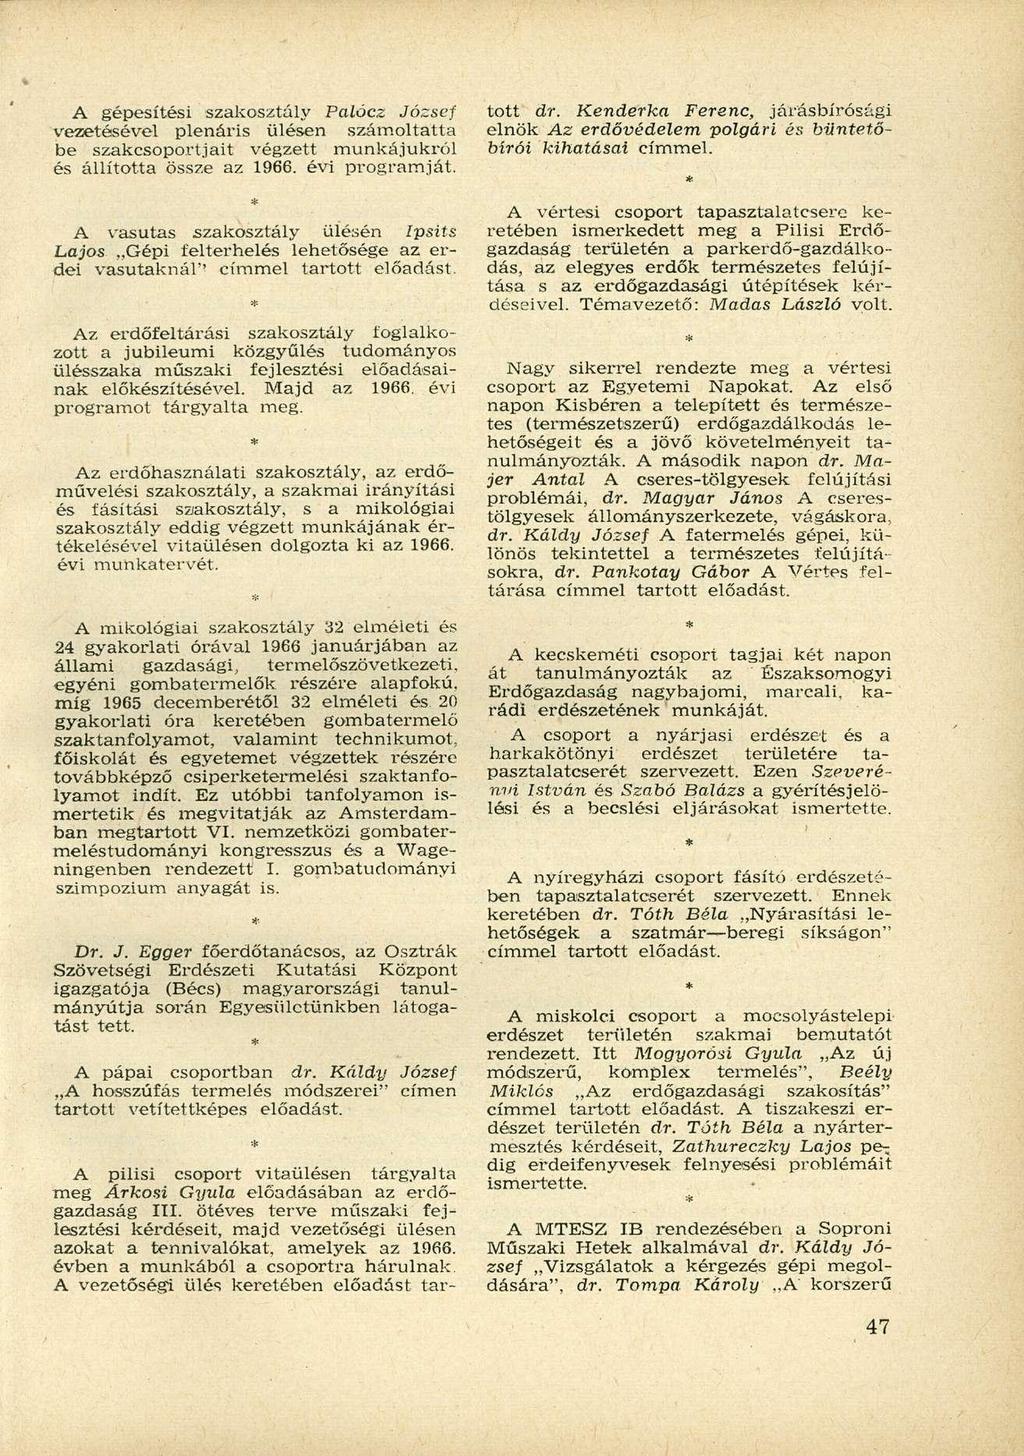 A gépesítési szakosztály Palócz József vezetésével plenáris ülésen számoltatta be szakcsoportjait végzett munkájukról és állította össze az 1966. évi programját.